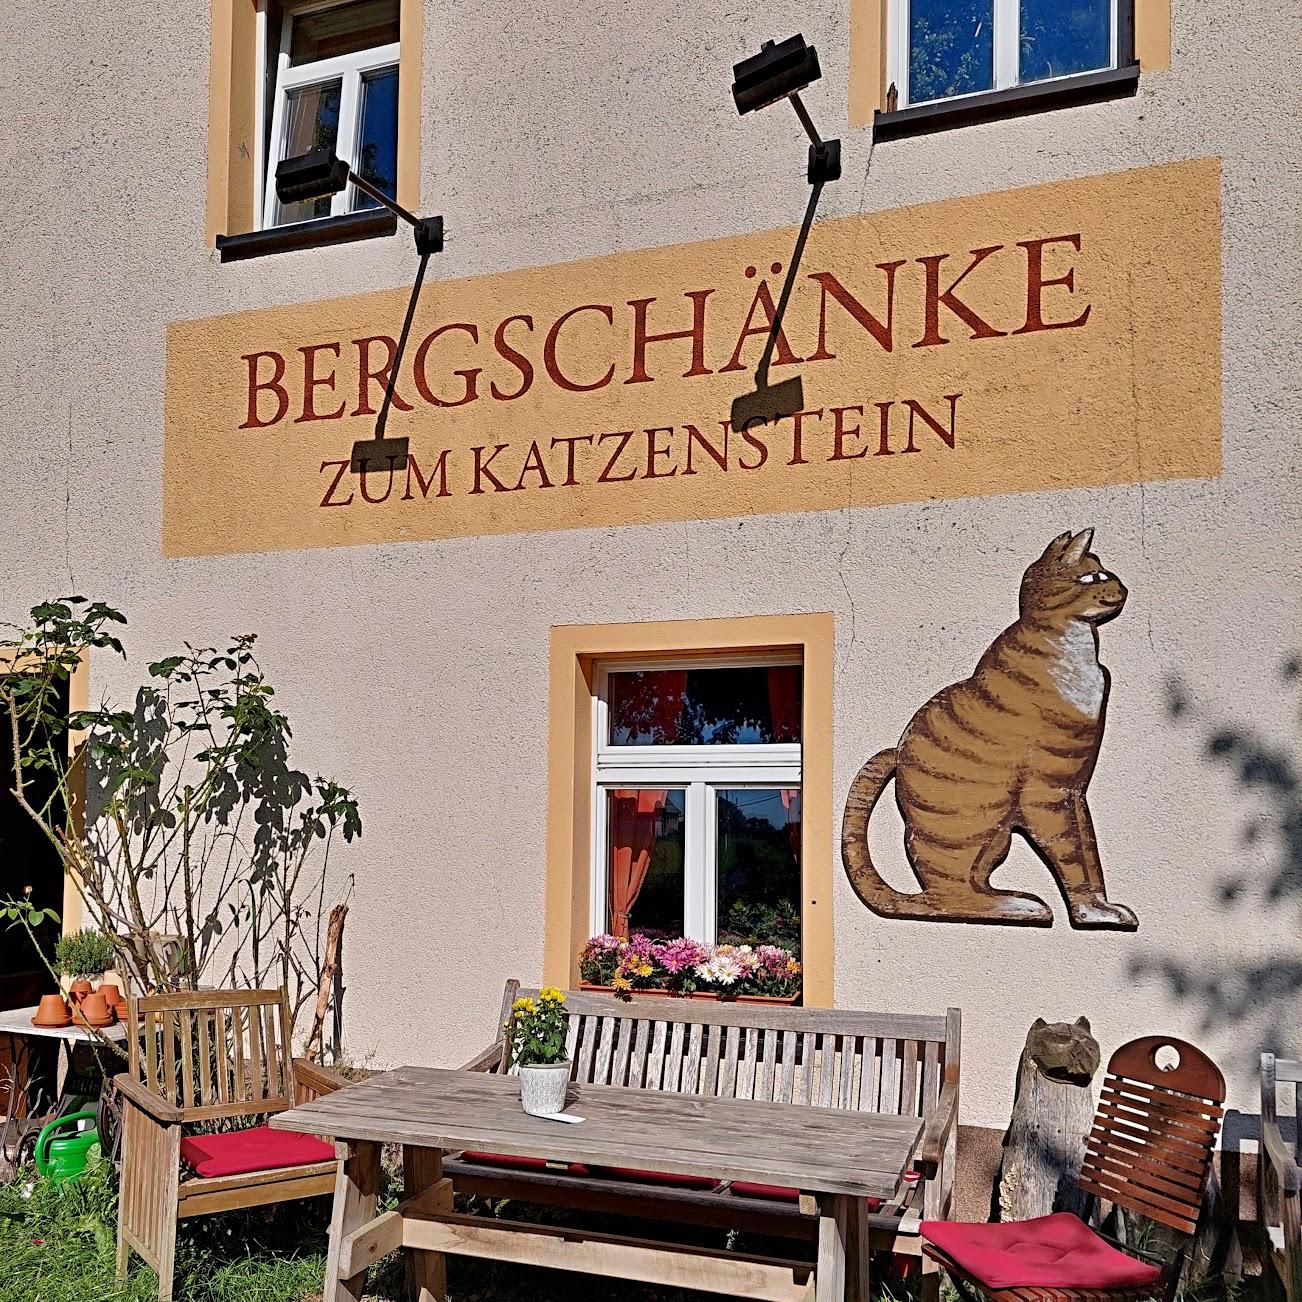 Restaurant "Bergschänke zum Katzenstein" in Marienberg